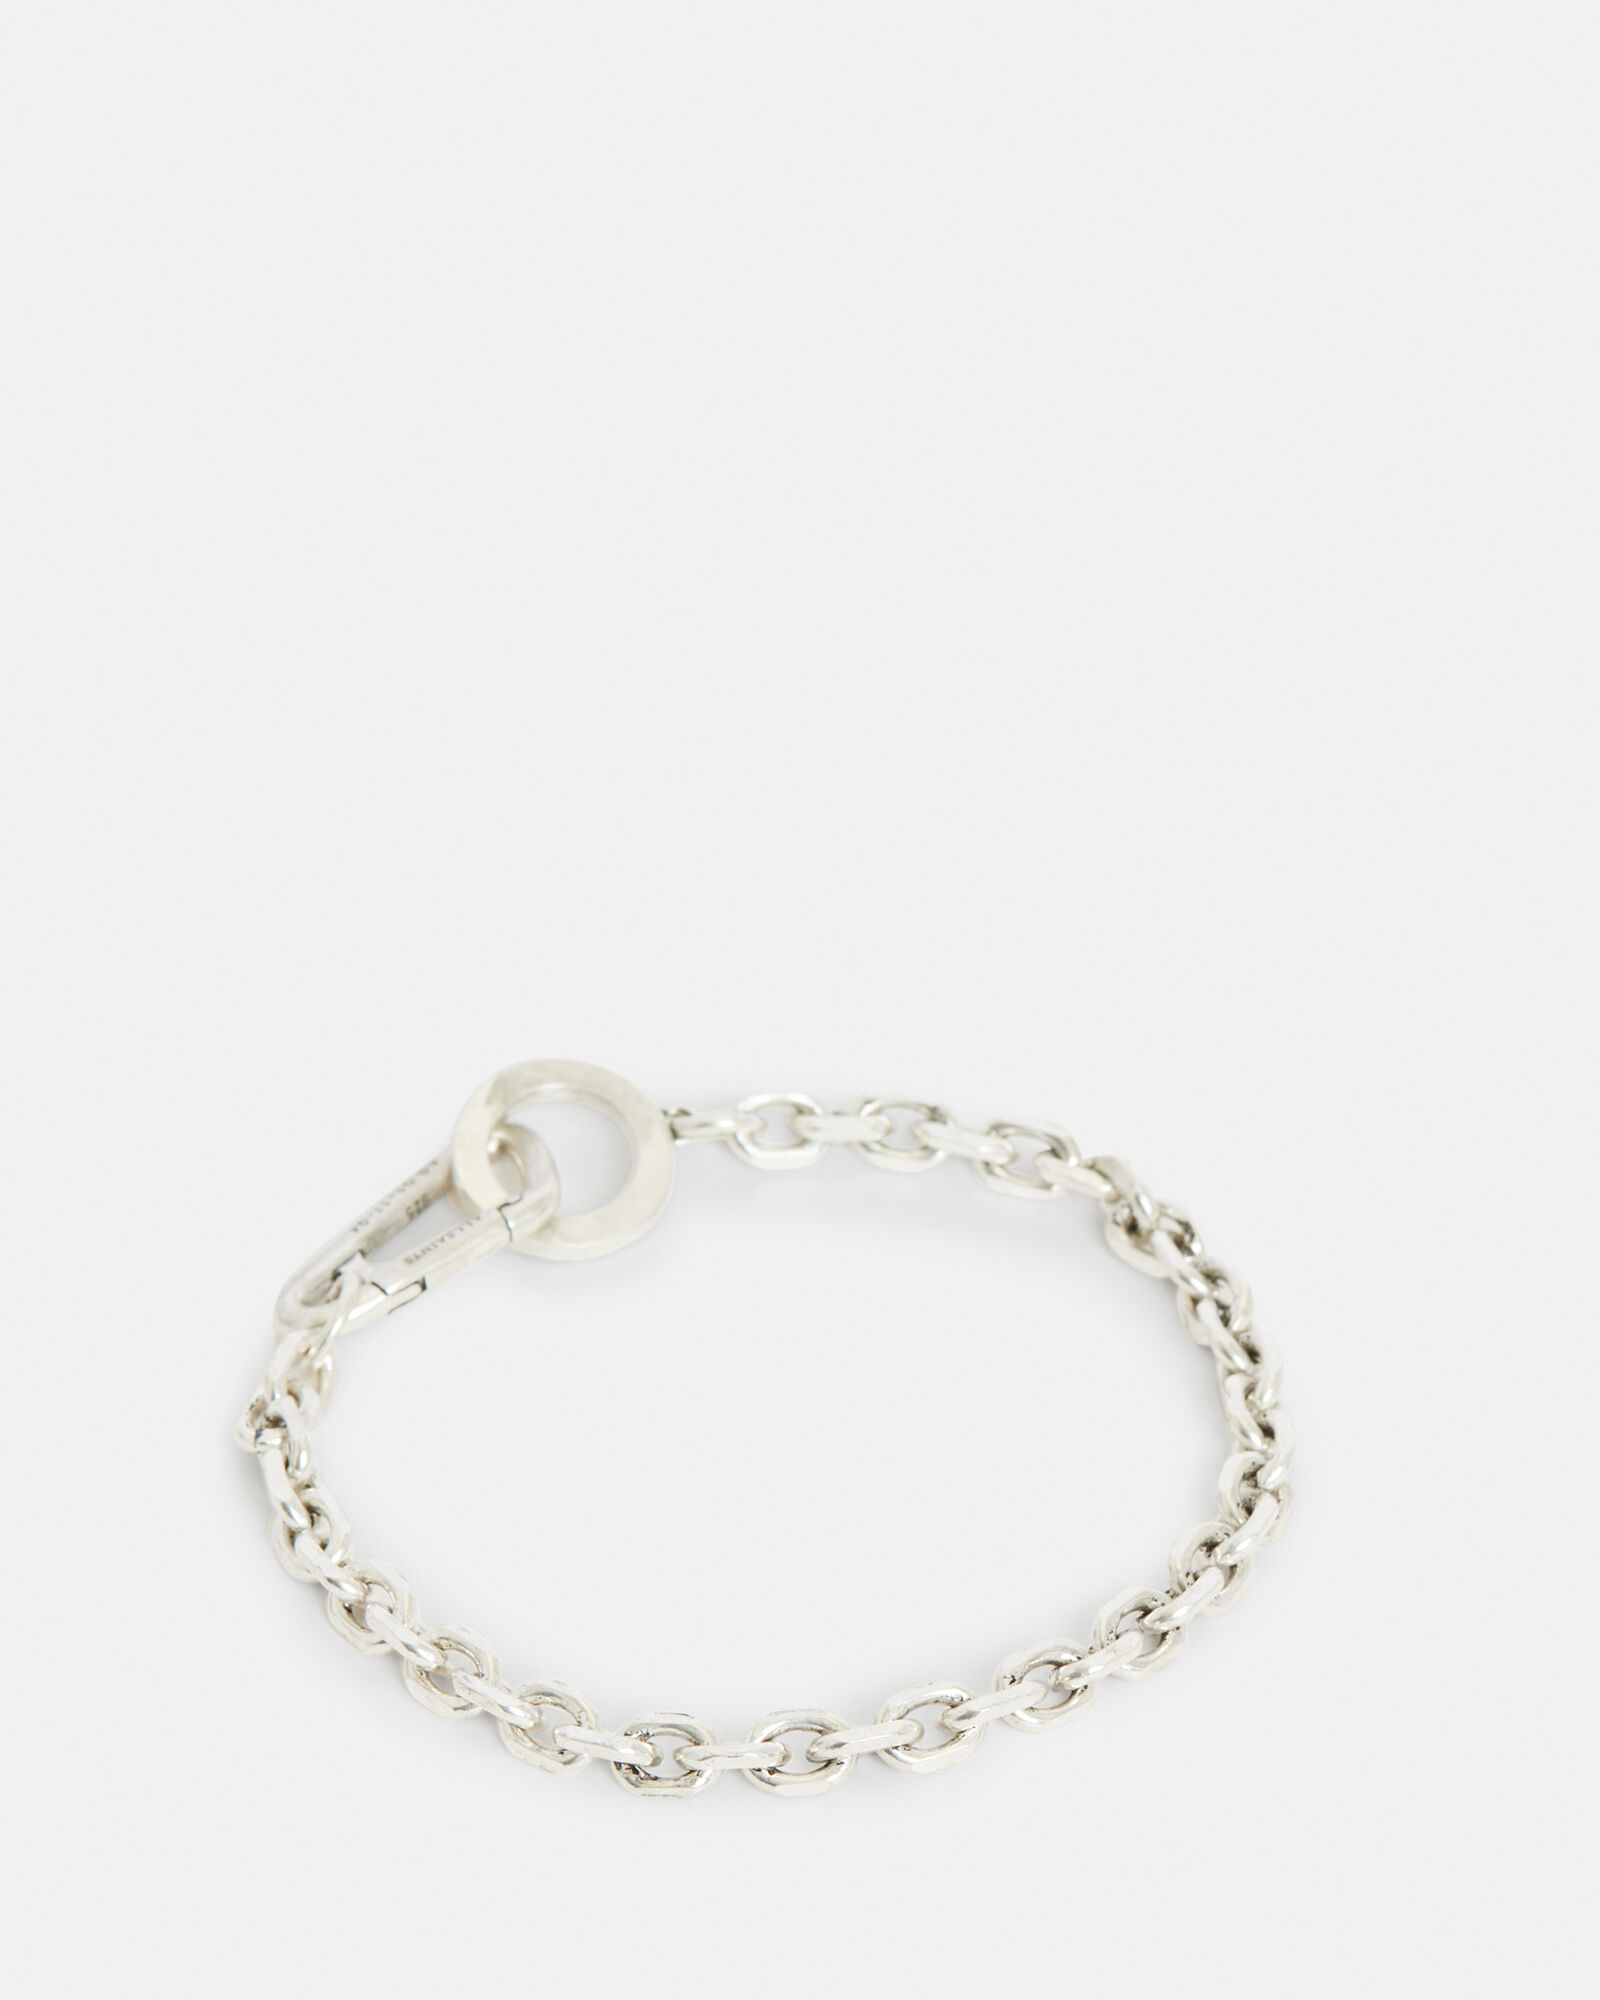 Geo Sterling Silver Chain Bracelet